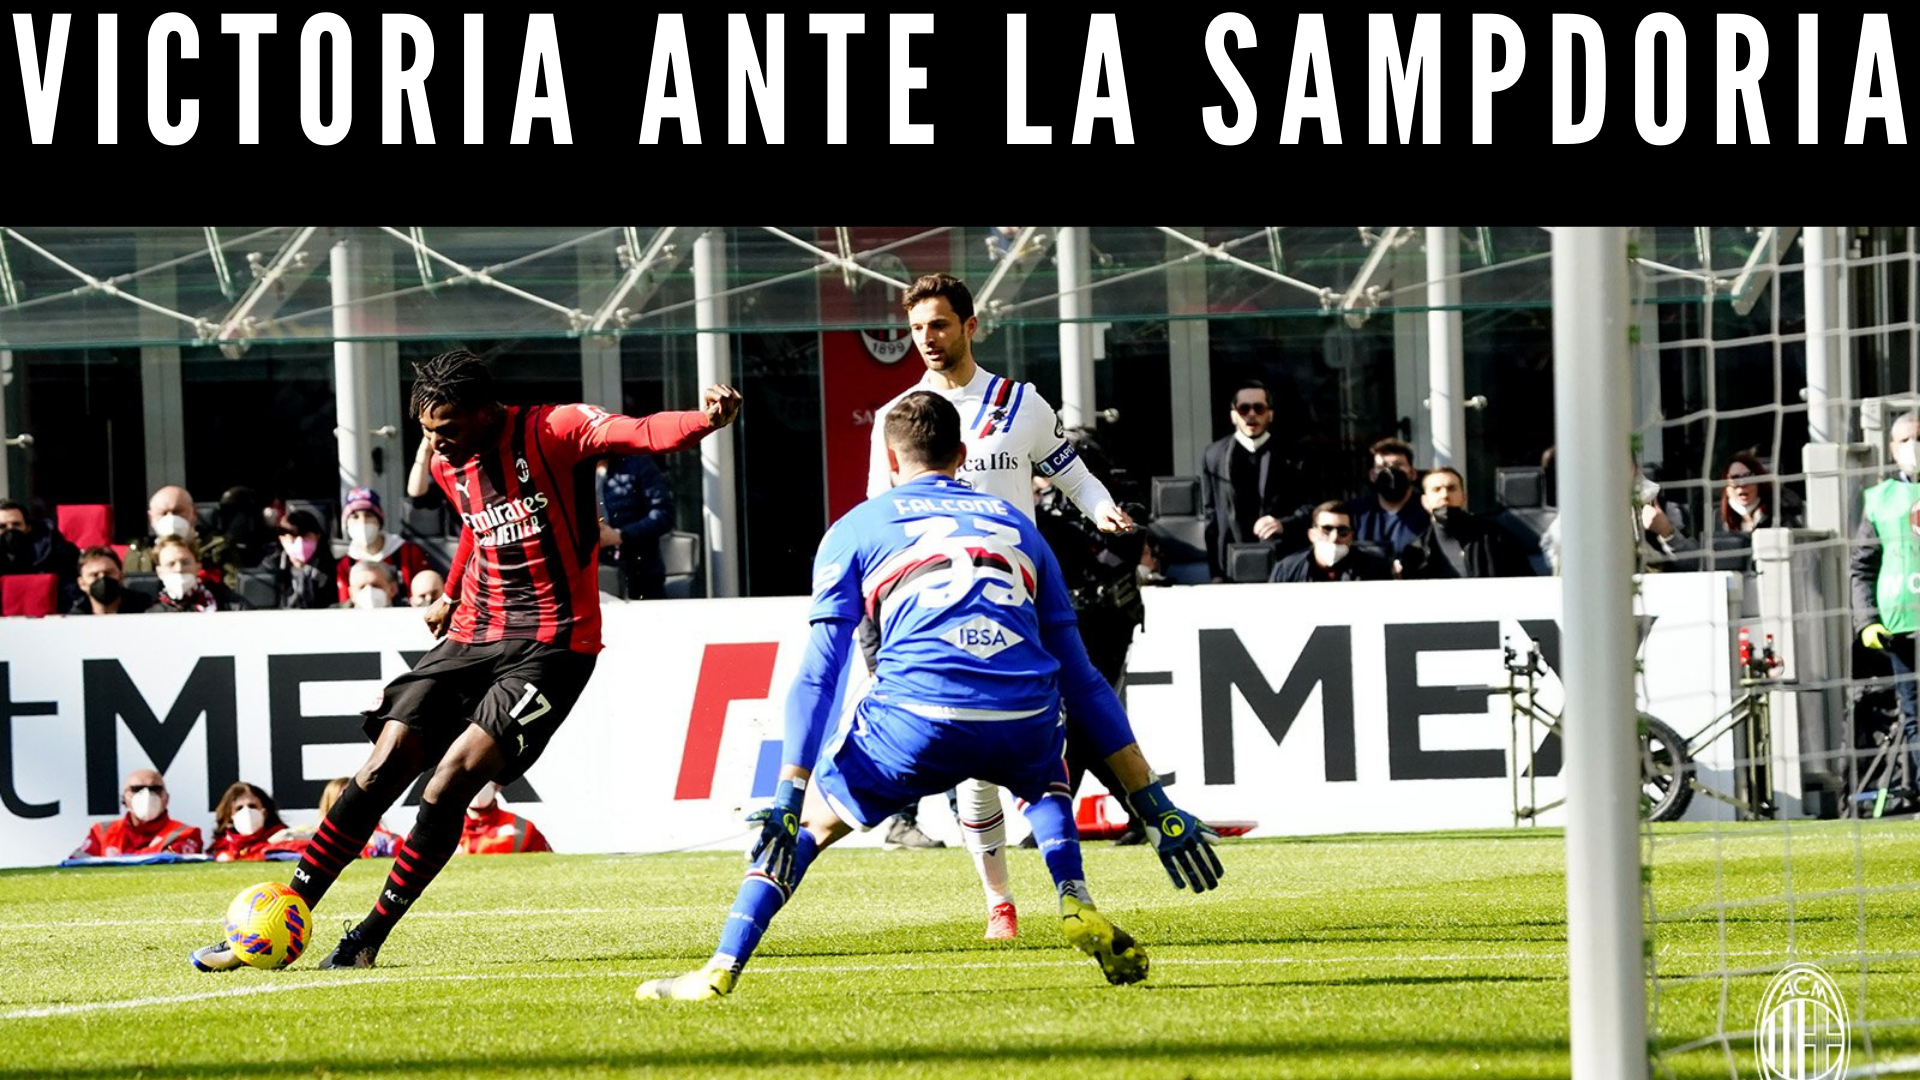 Victoria ante la Sampdoria.png